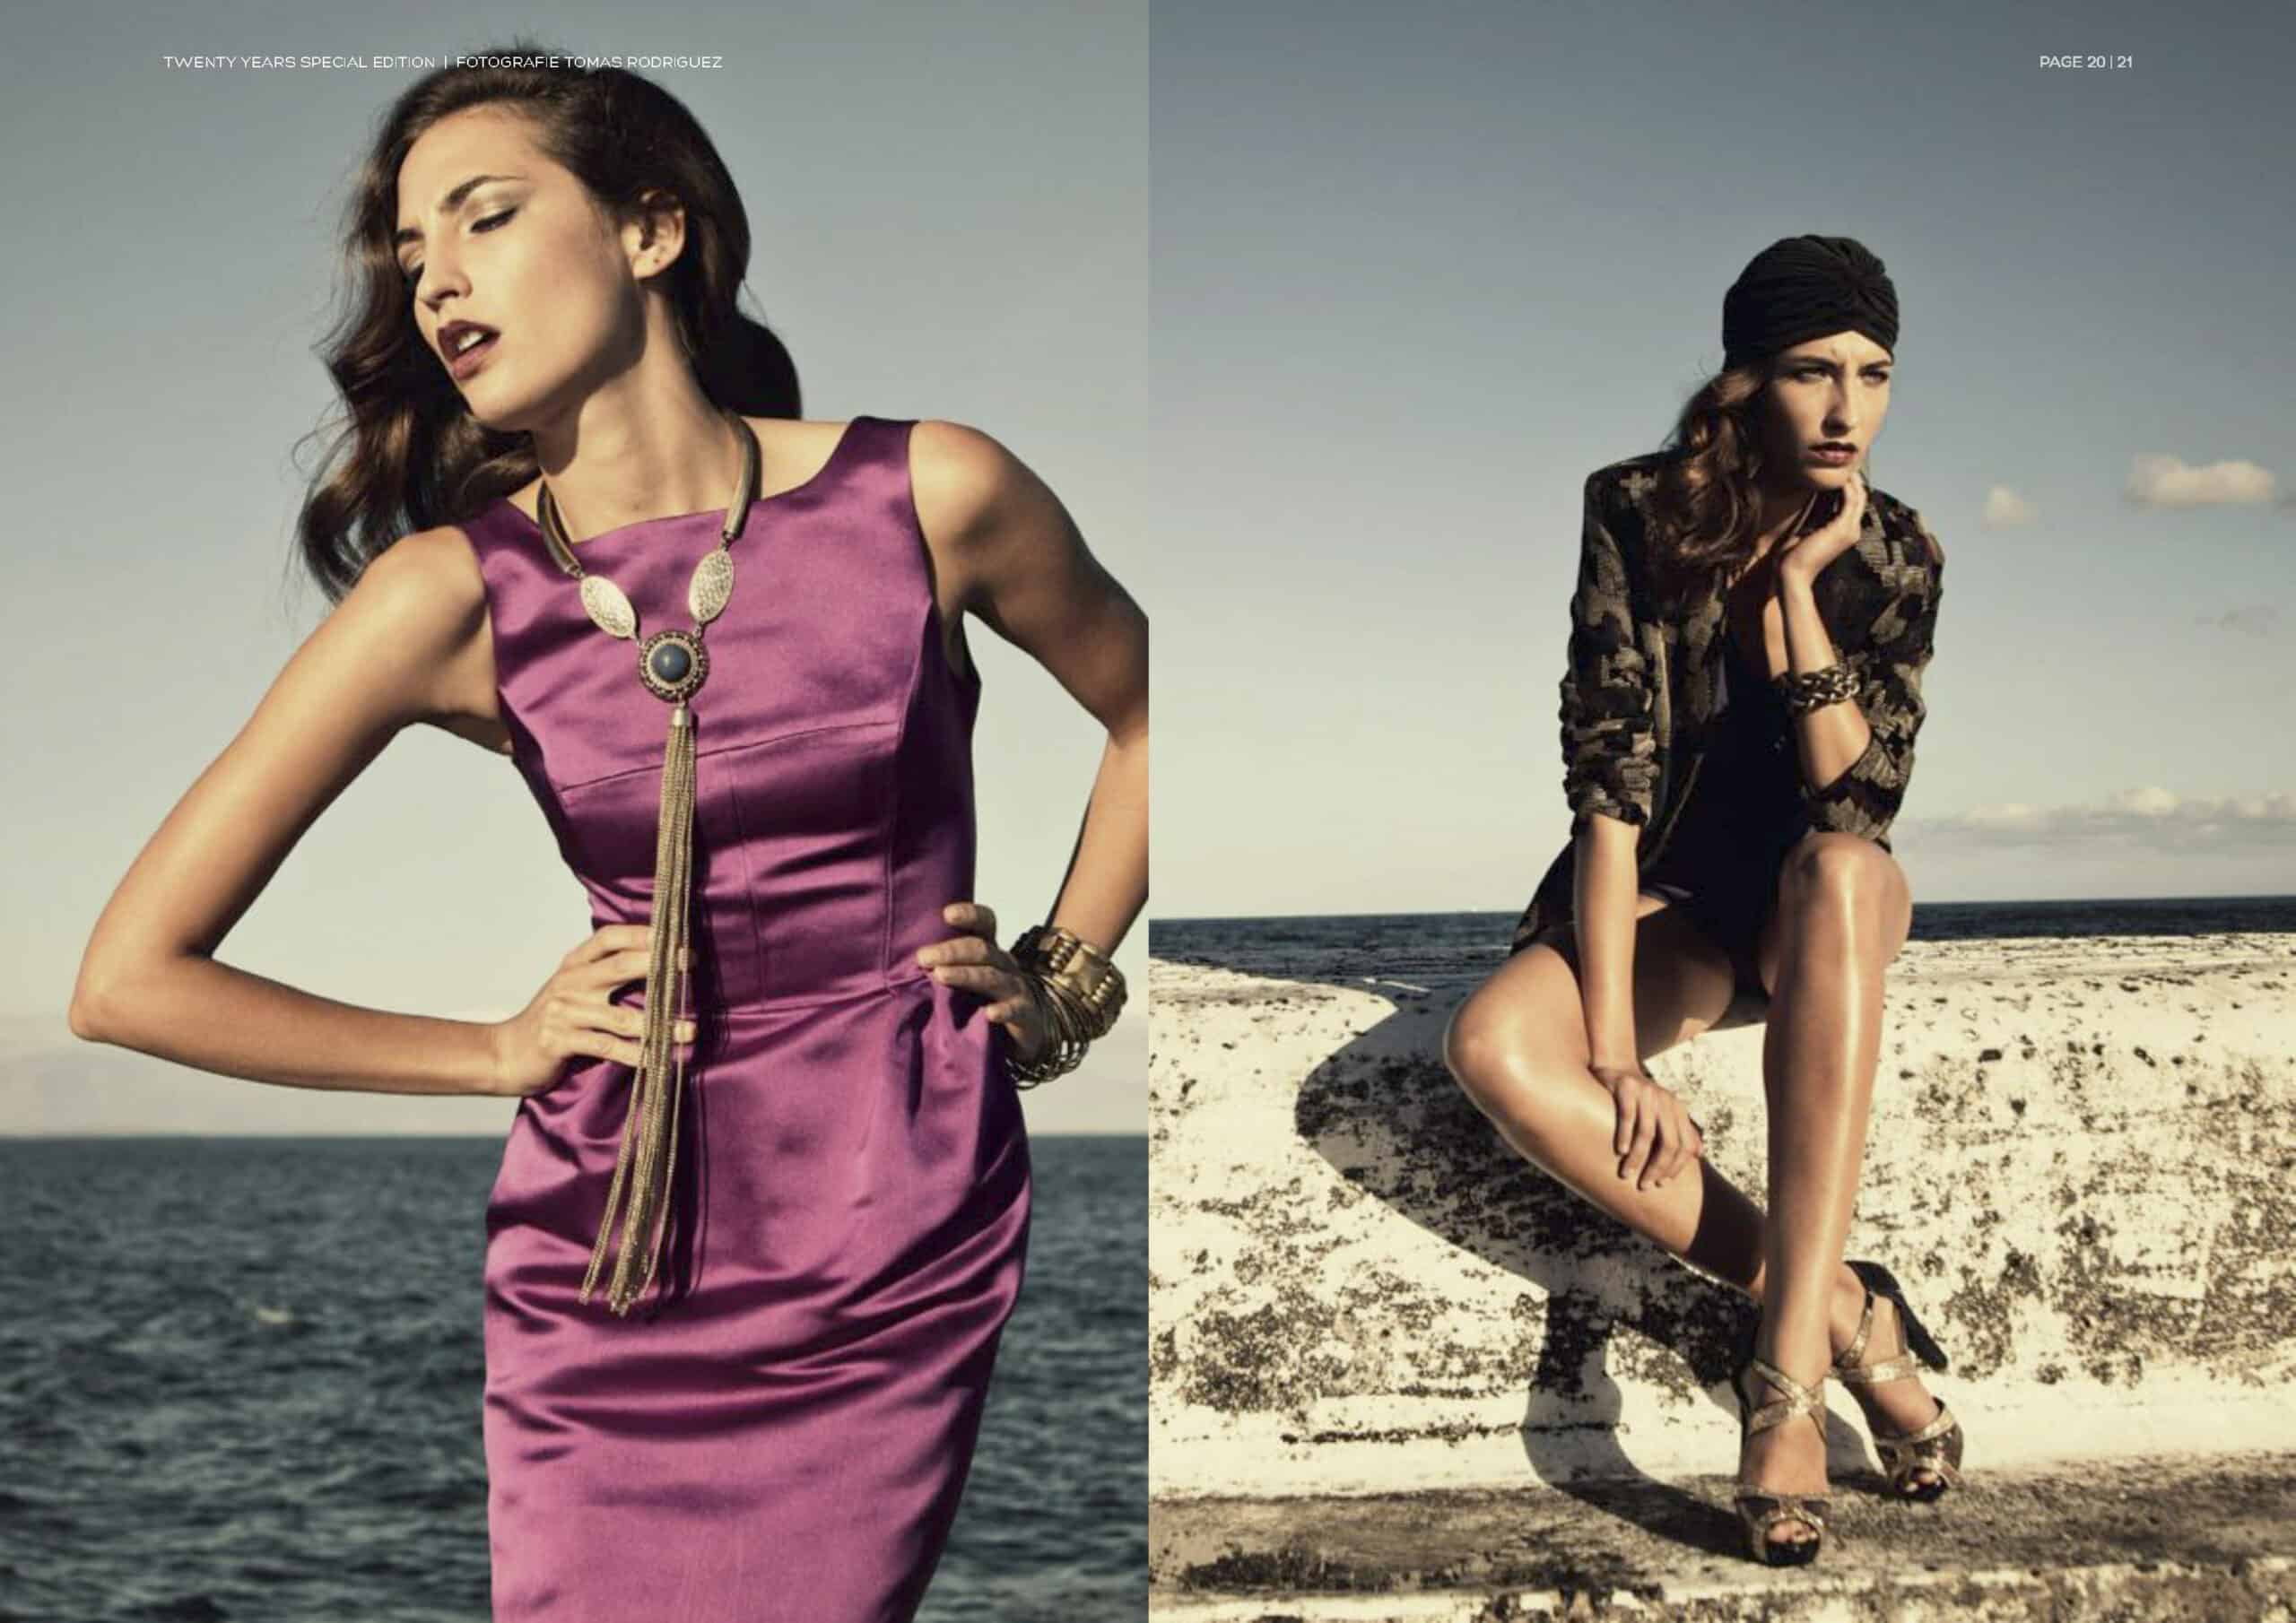 Eine Modestrecke mit zwei Bildern: Links posiert eine Frau in einem schlichten lila Kleid selbstbewusst vor einem unscharfen Hintergrund. Rechts sitzt eine weitere Frau in einem gemusterten Outfit nachdenklich auf einem Felsvorsprung am Meer. © Fotografie Tomas Rodriguez